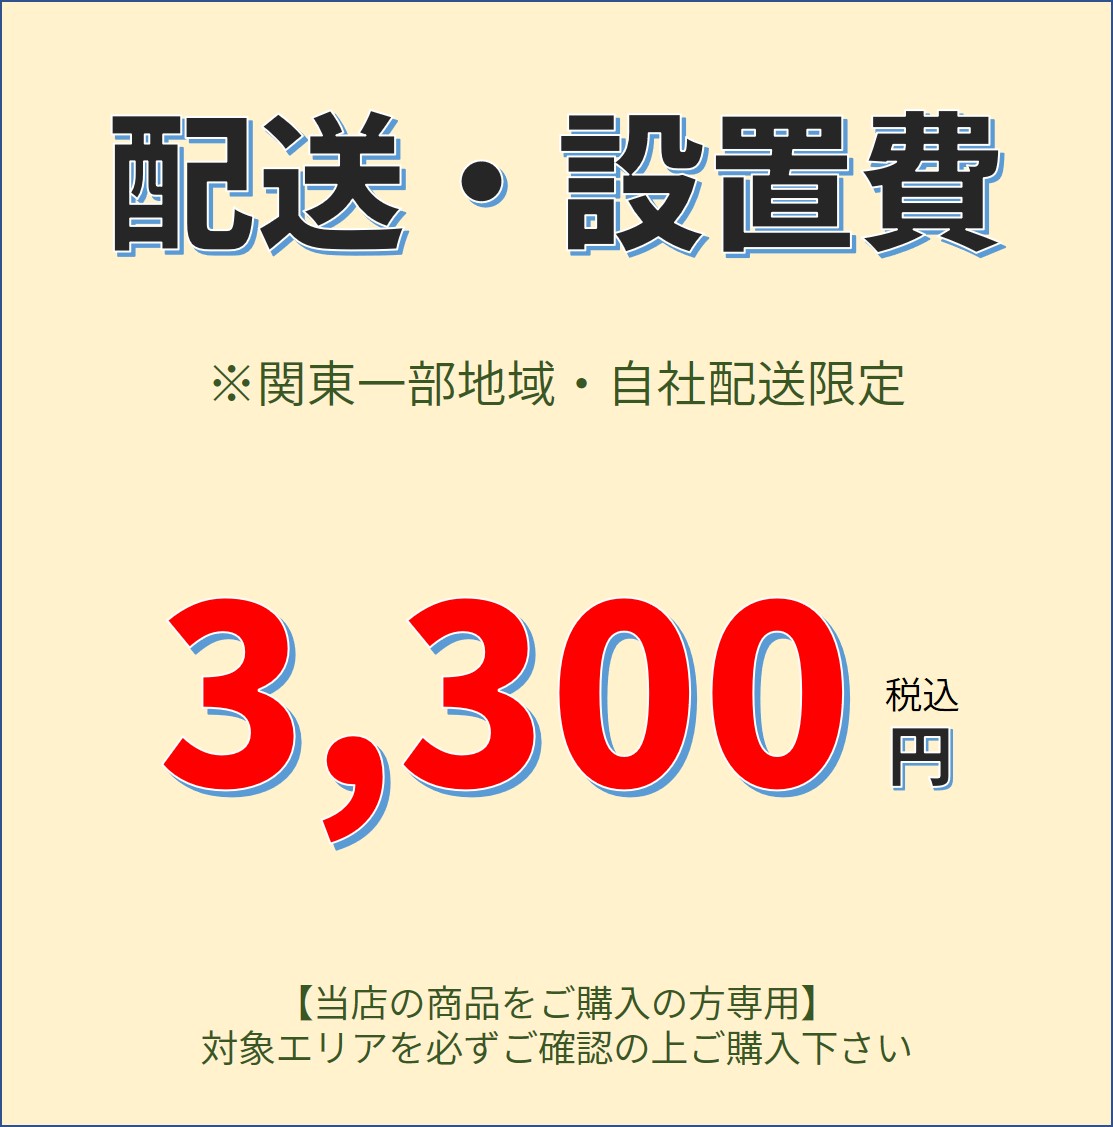 配送 設置費 -3300円 限定品 有料オプション 大幅にプライスダウン